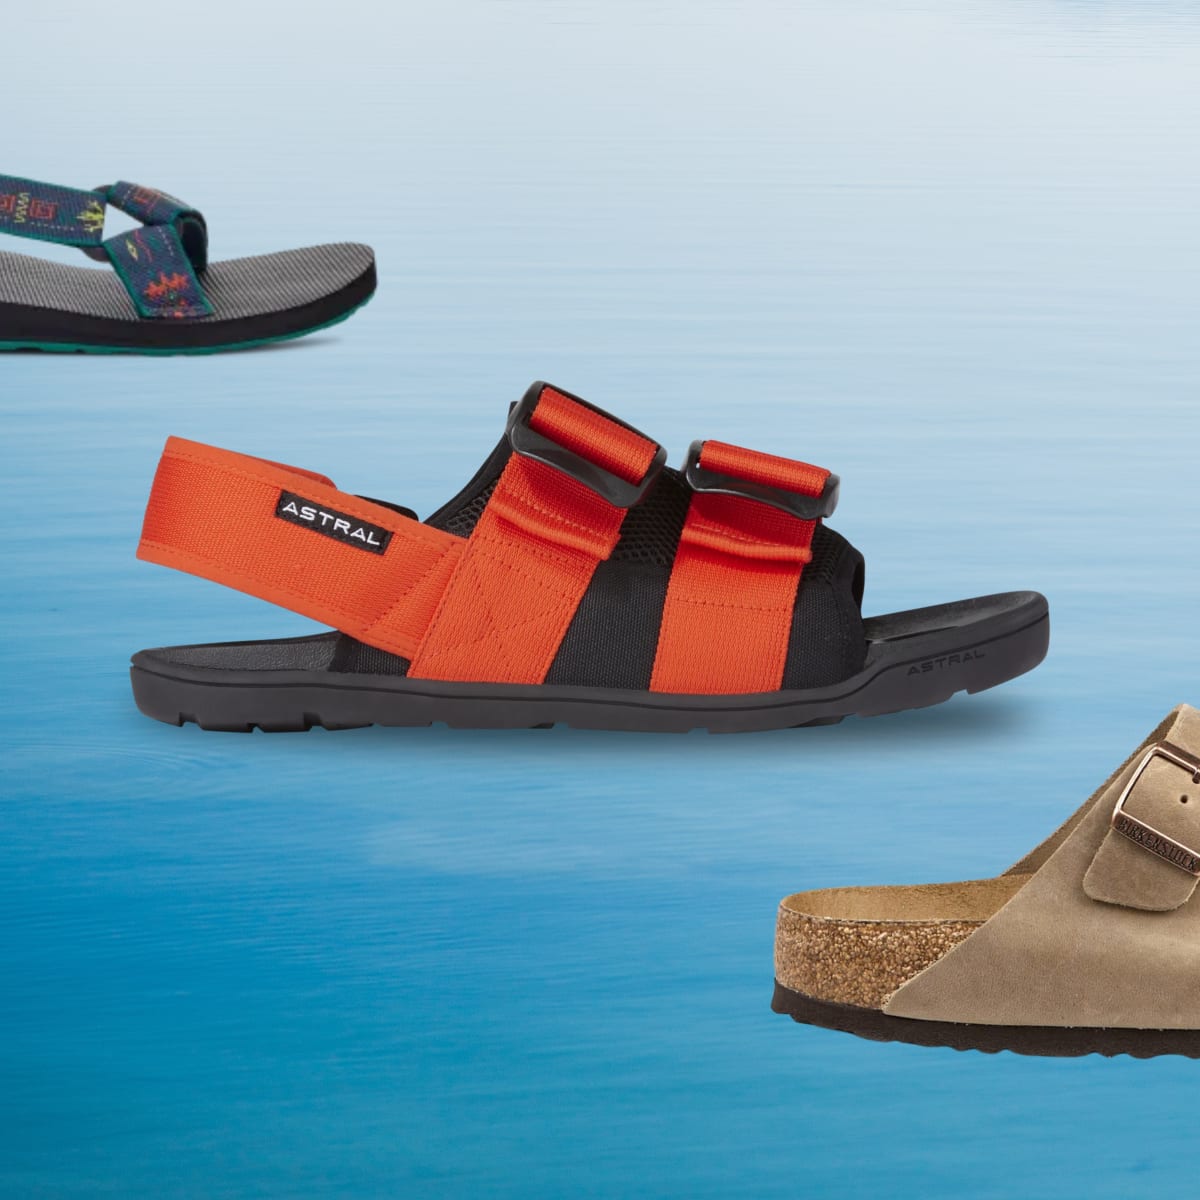 Gallery Seven Men's Home-comfort Slide Sandals